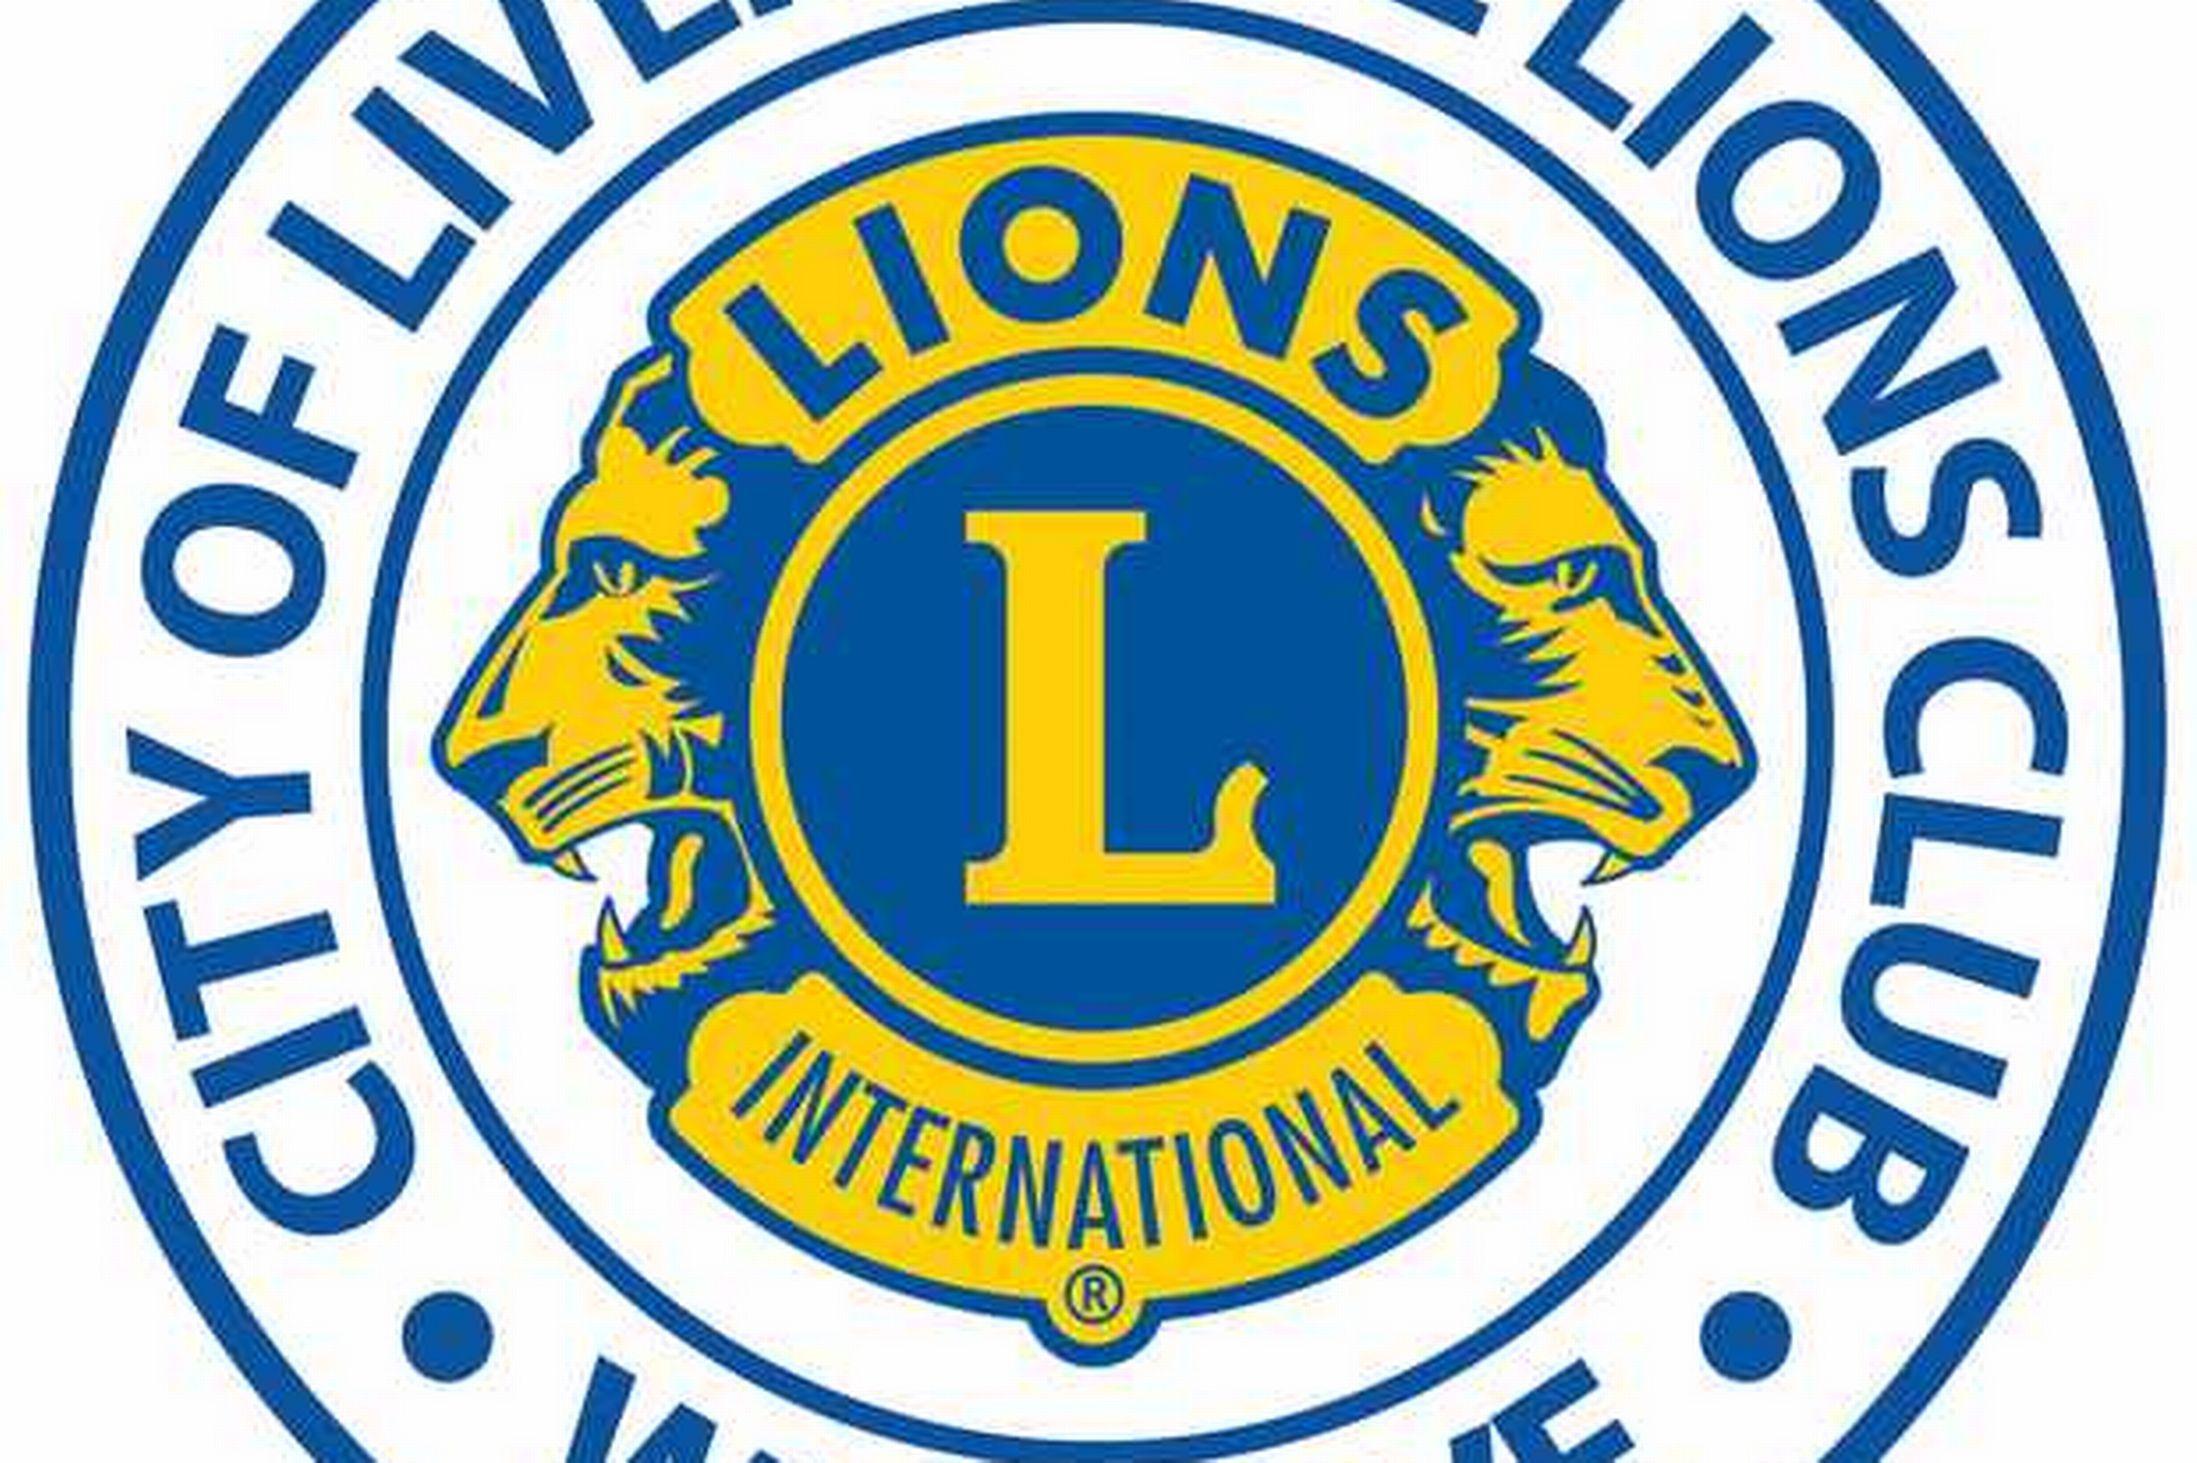 Lions Club Logo - Lions club international Logos